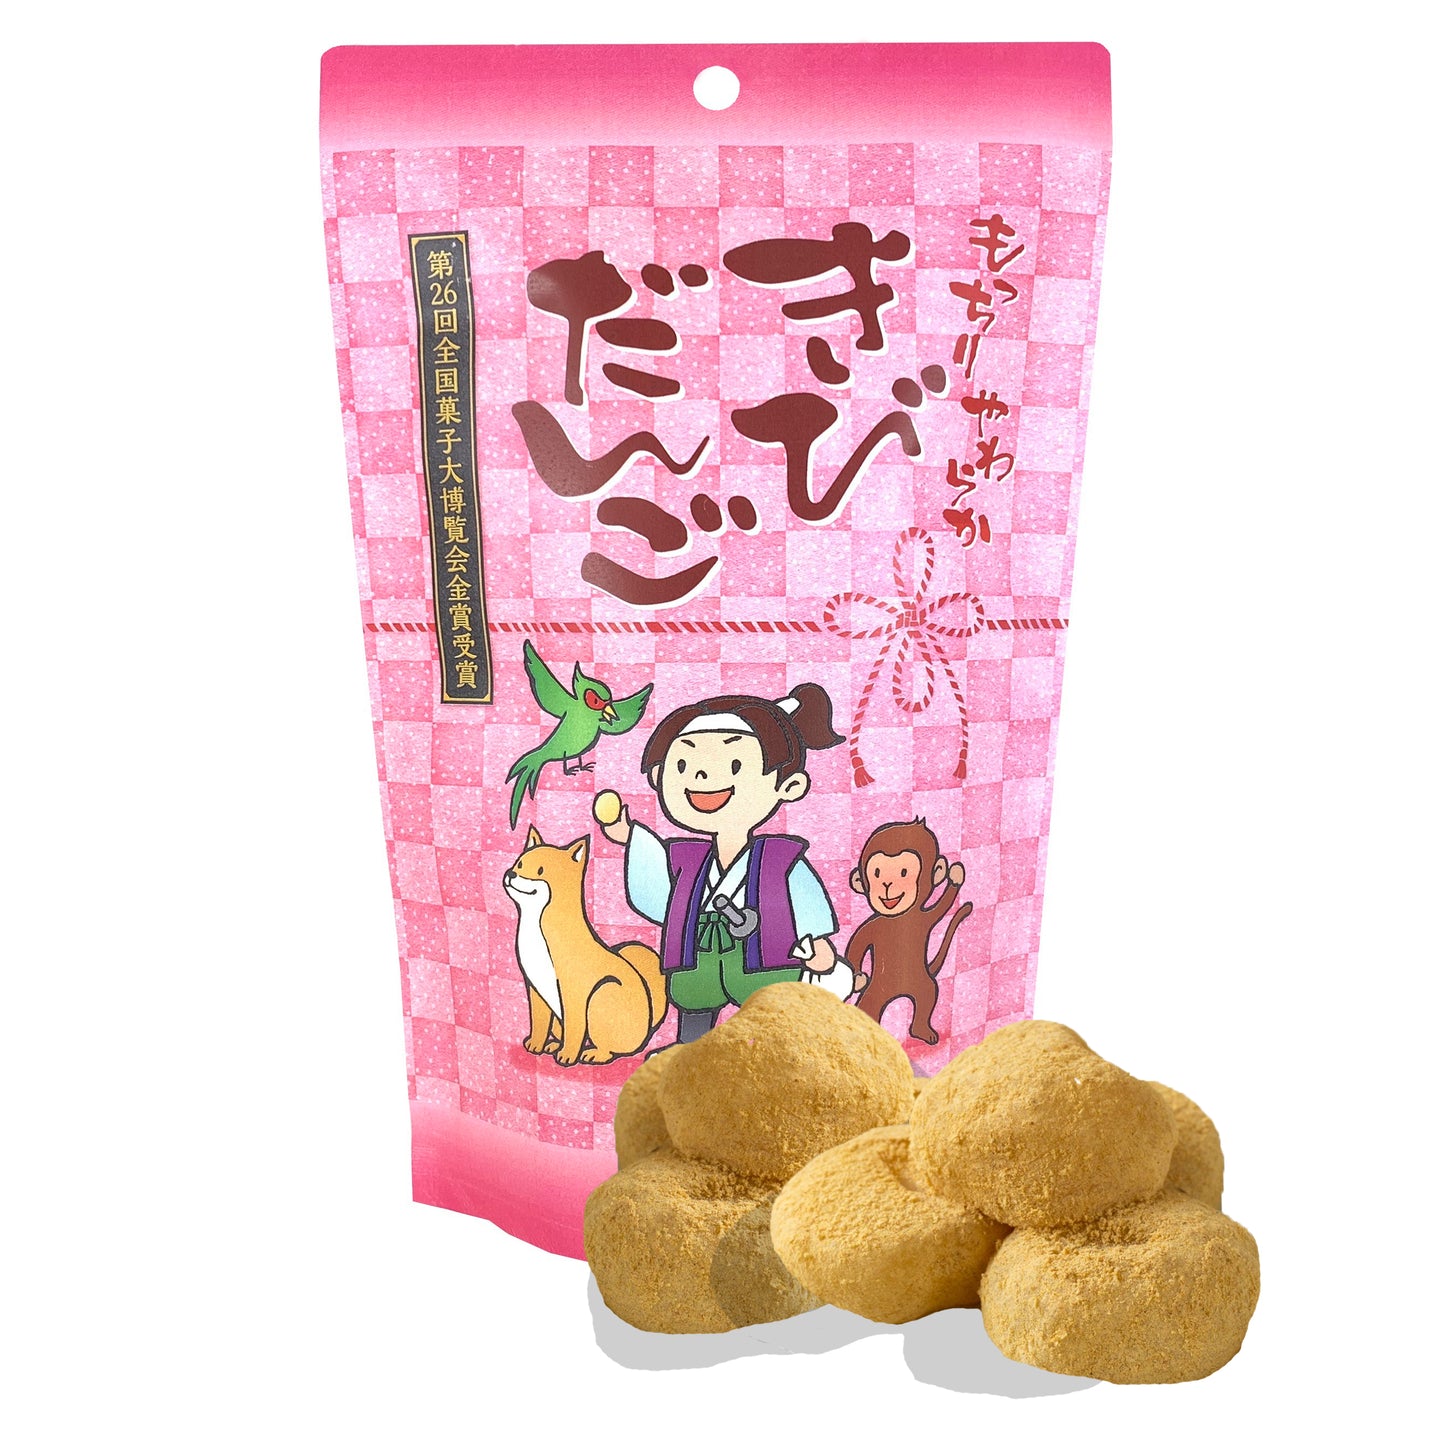 Mochi - Traditional Japanese Wagashi Sweets